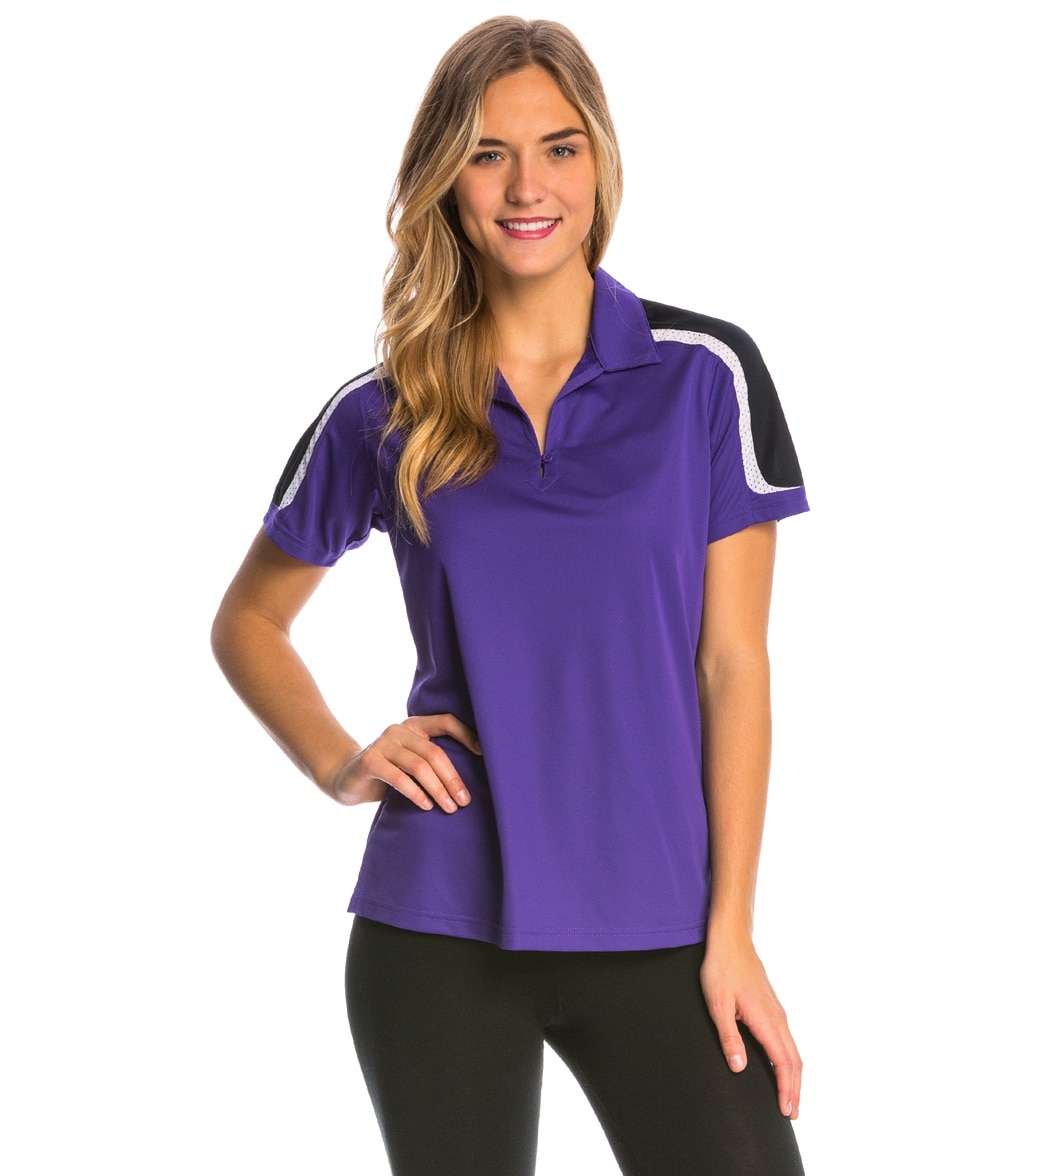 Women's Tech Polo - Purple/Black/White 2Xl Polyester - Swimoutlet.com